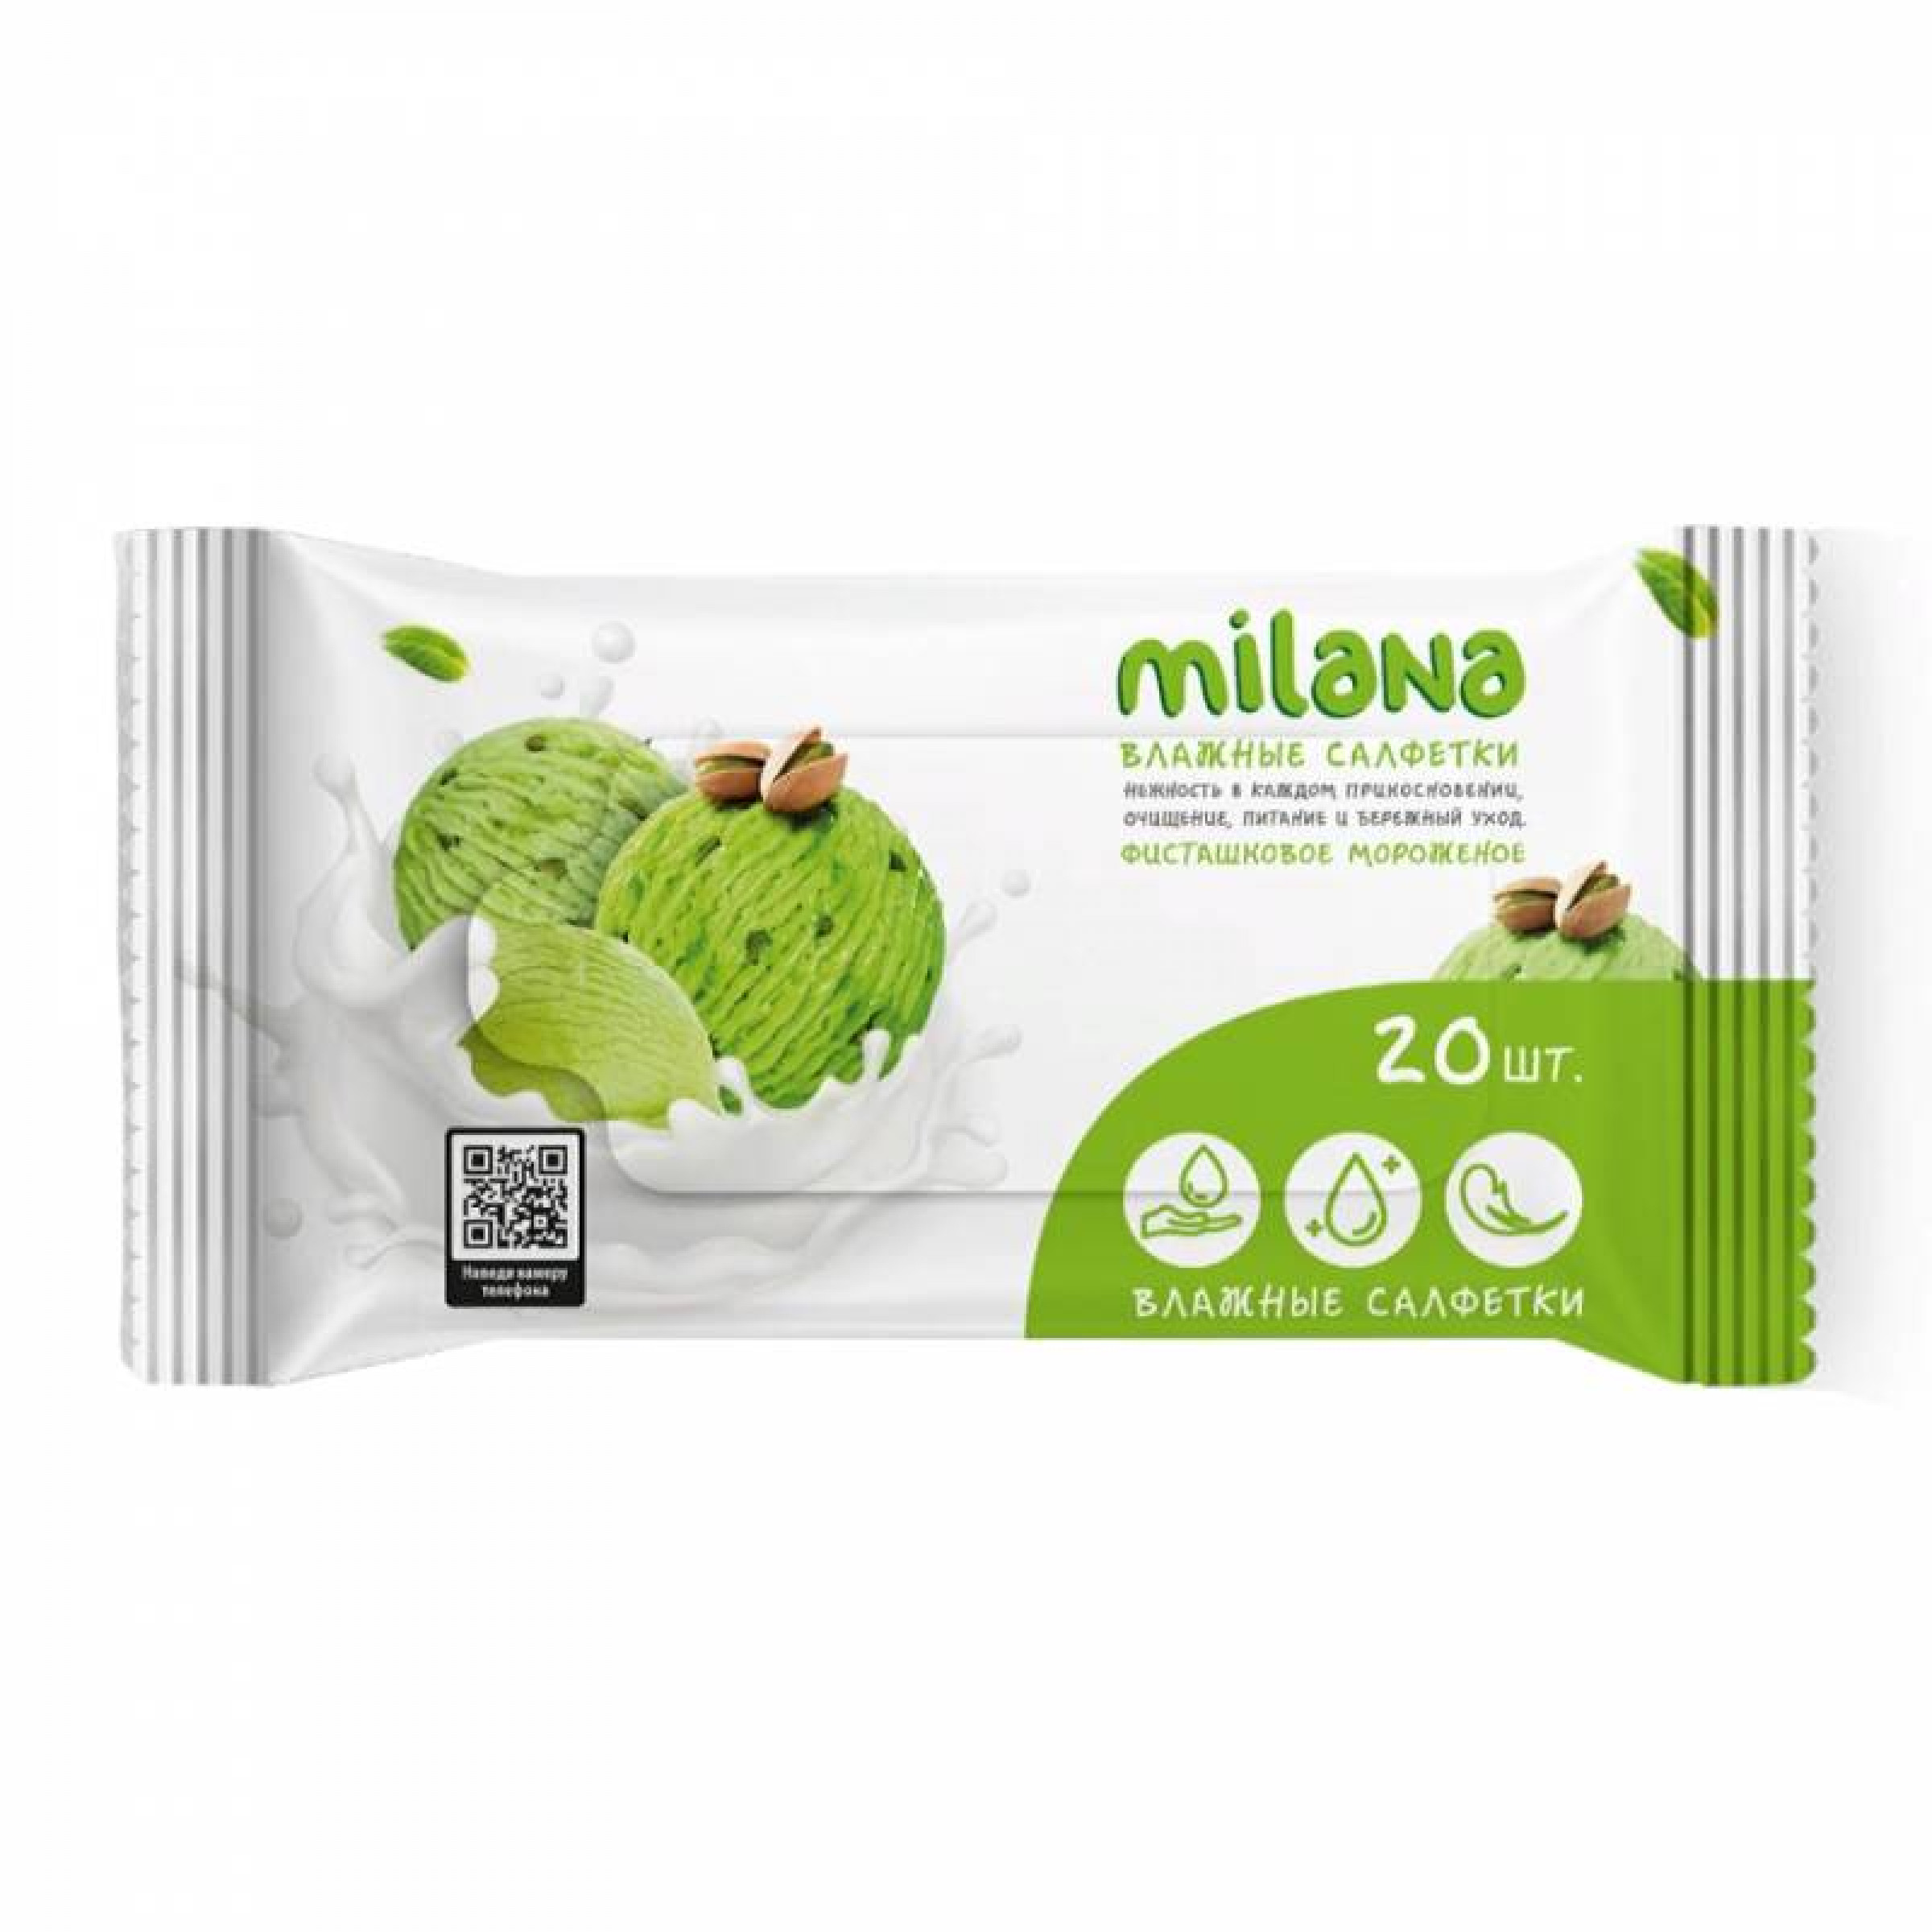 Влажные салфетки GRASS Milana Фисташковое Мороженое антибактериальные, 20 шт